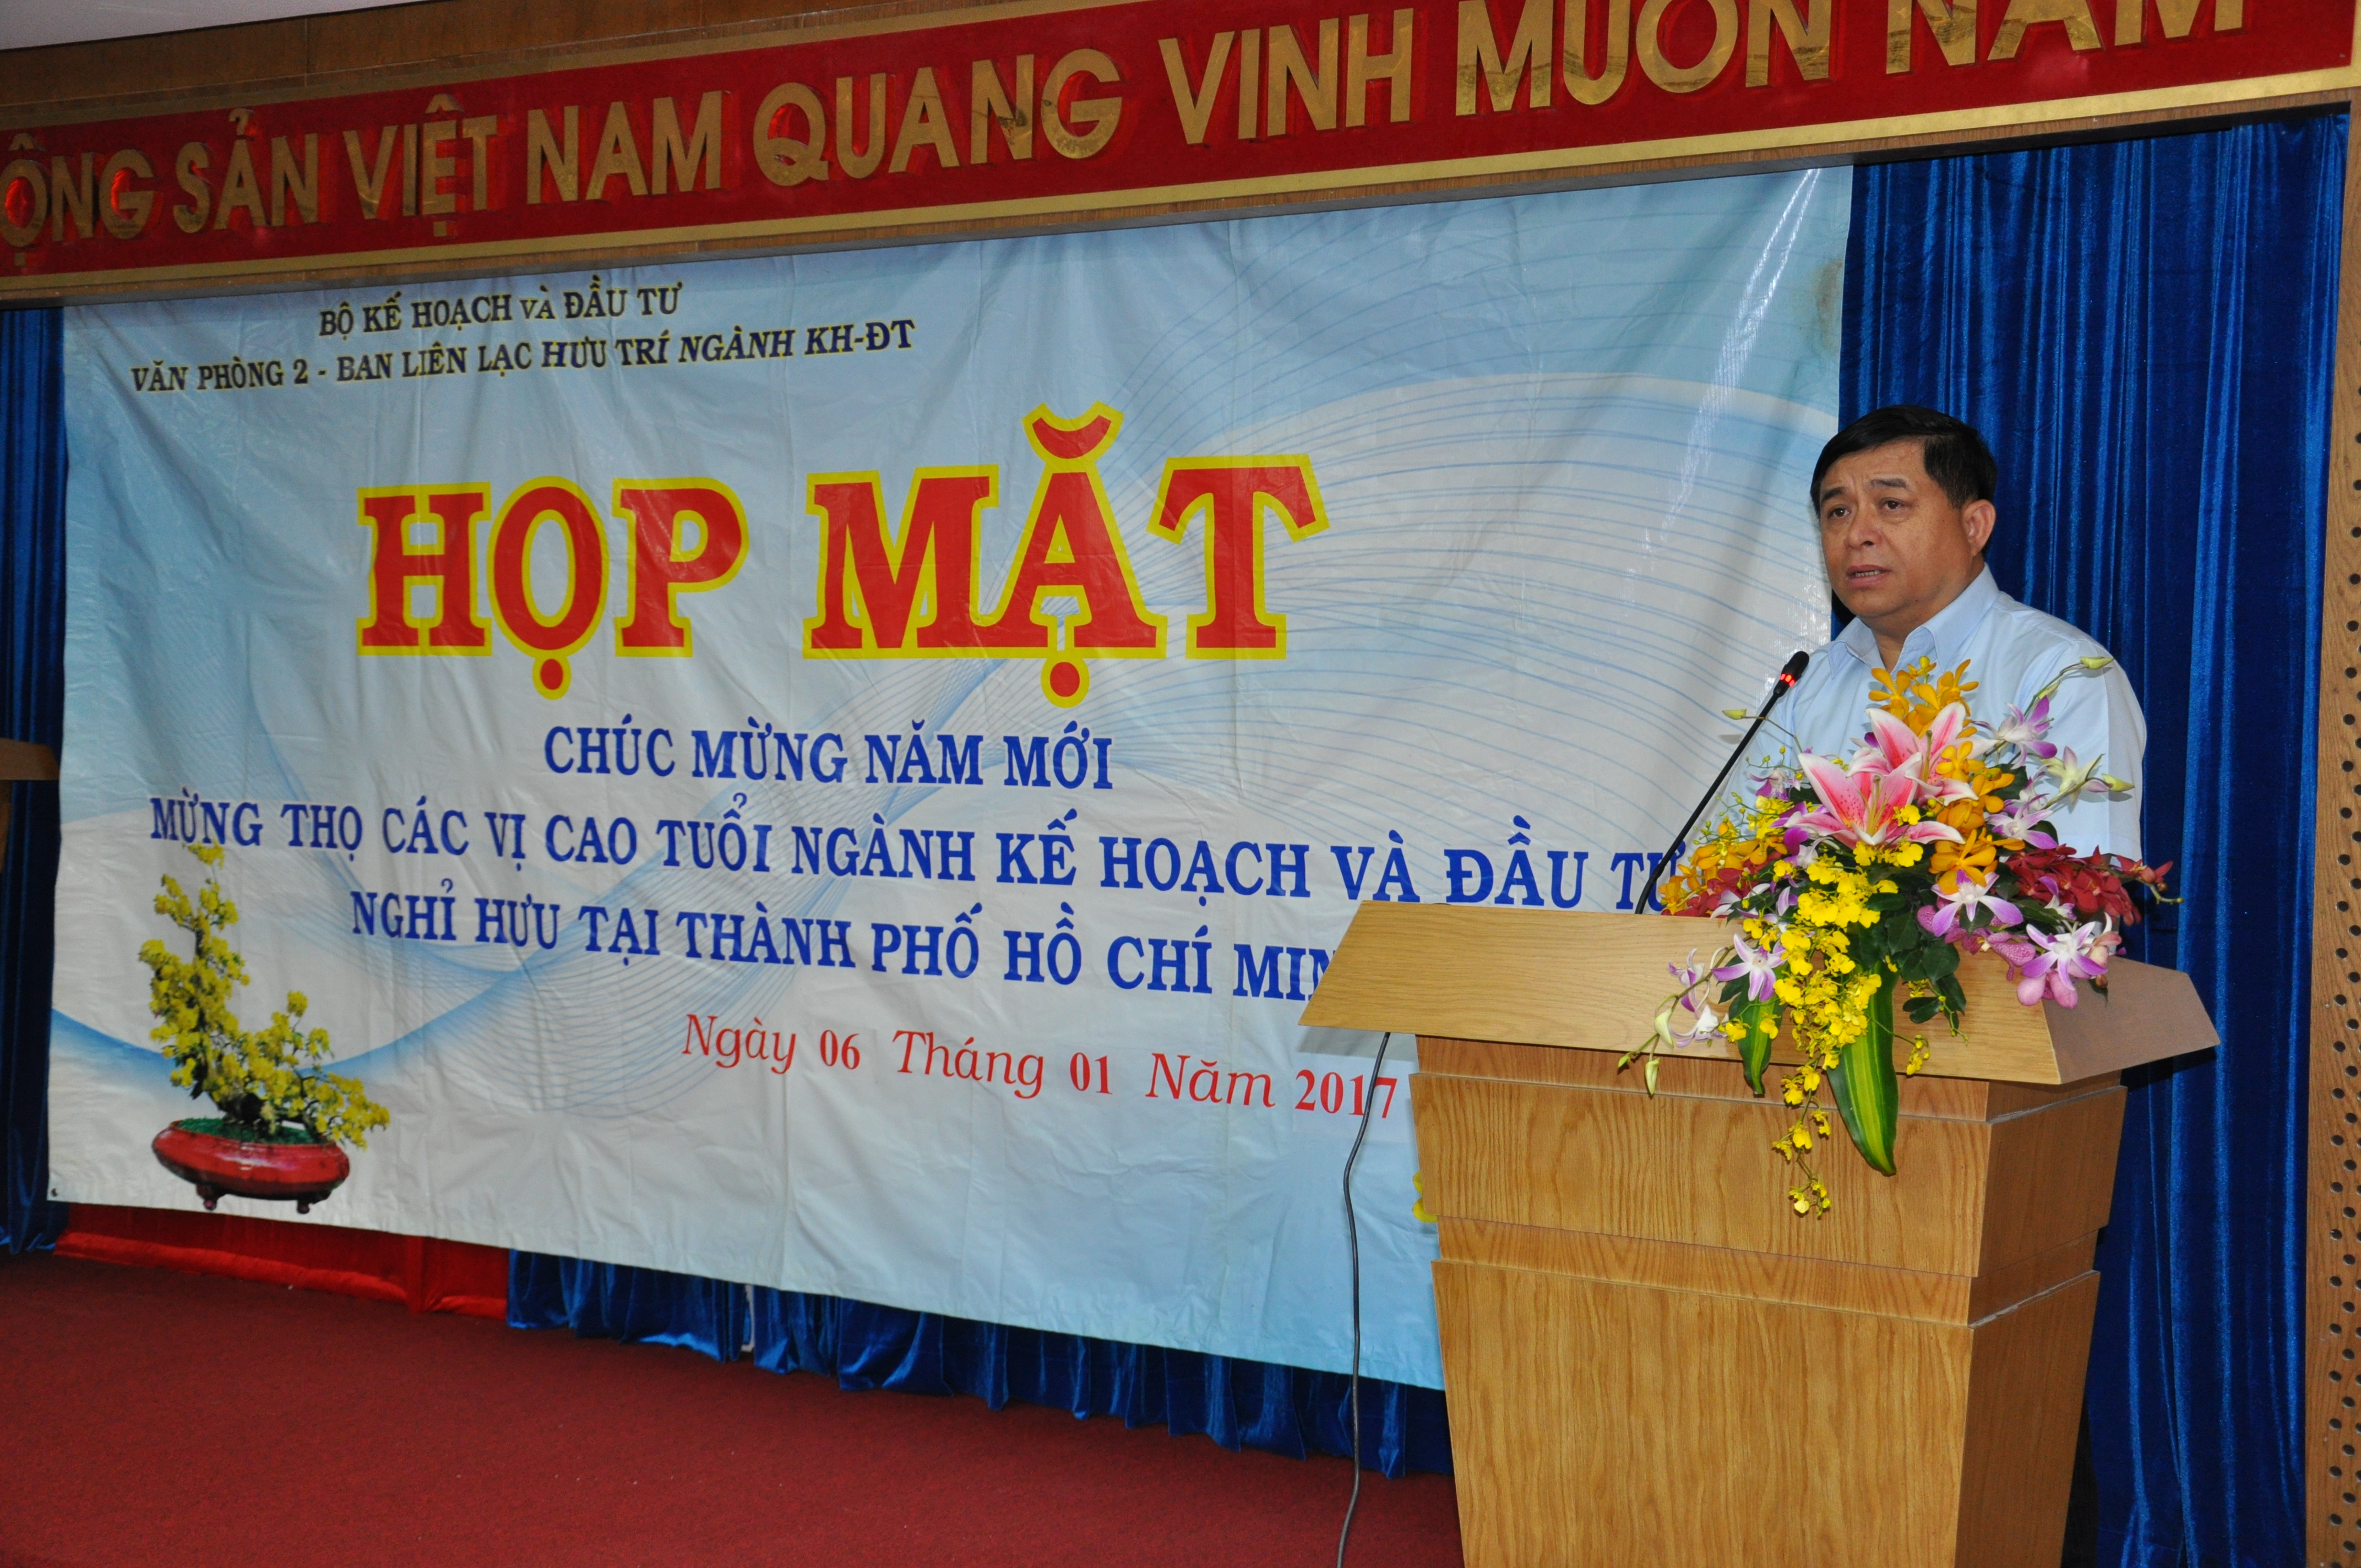 Ngành Kế hoạch và Đầu tư ở TP. Hồ Chí Minh họp mặt cán bộ đầu năm